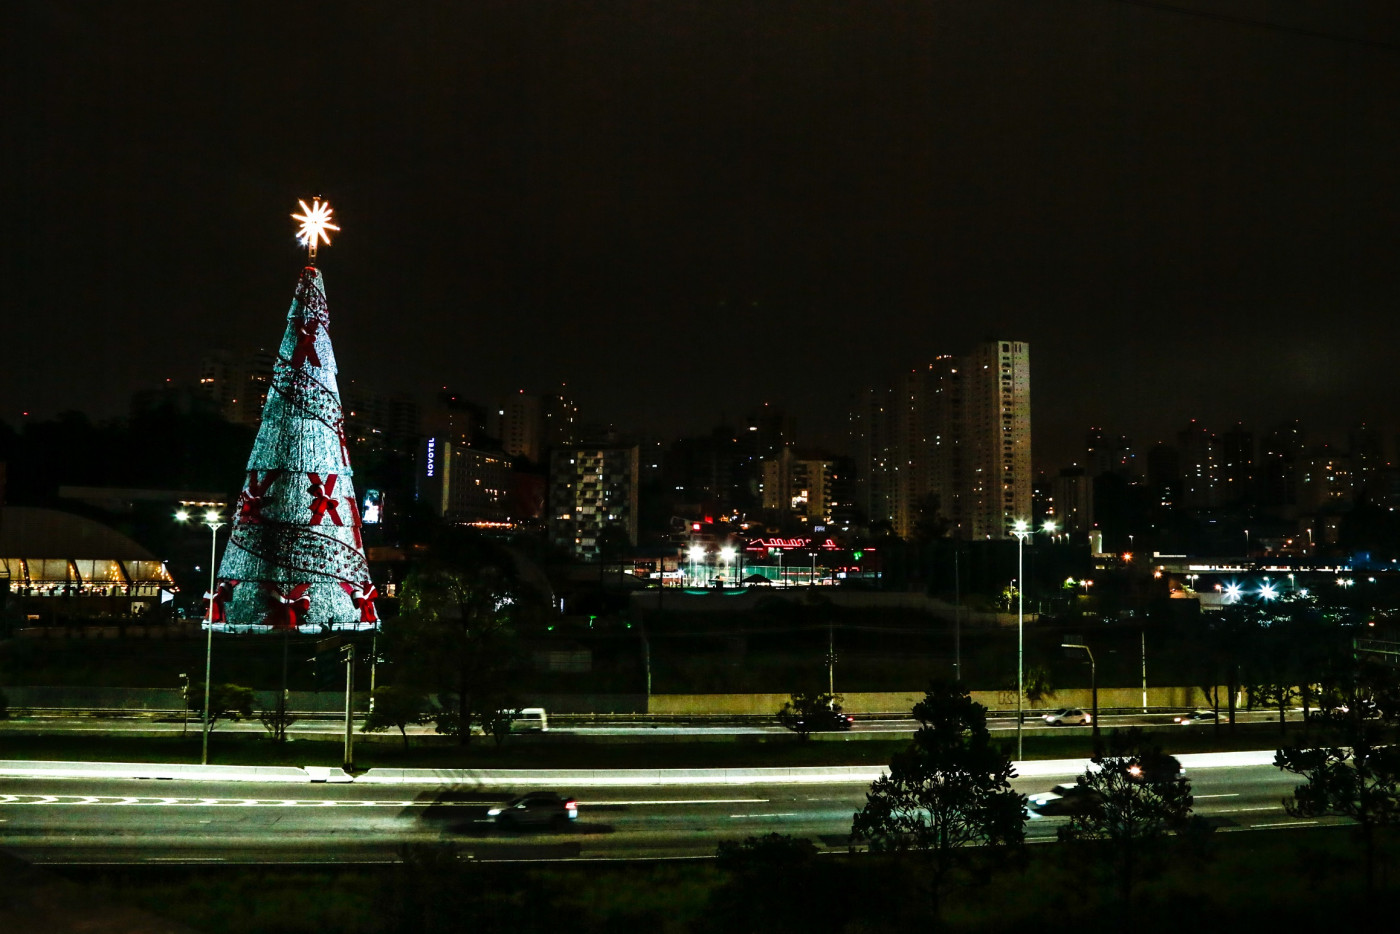 Para pulverizar aglomeração, Parque Ibirapuera inaugura três árvores de  Natal | Jovem Pan